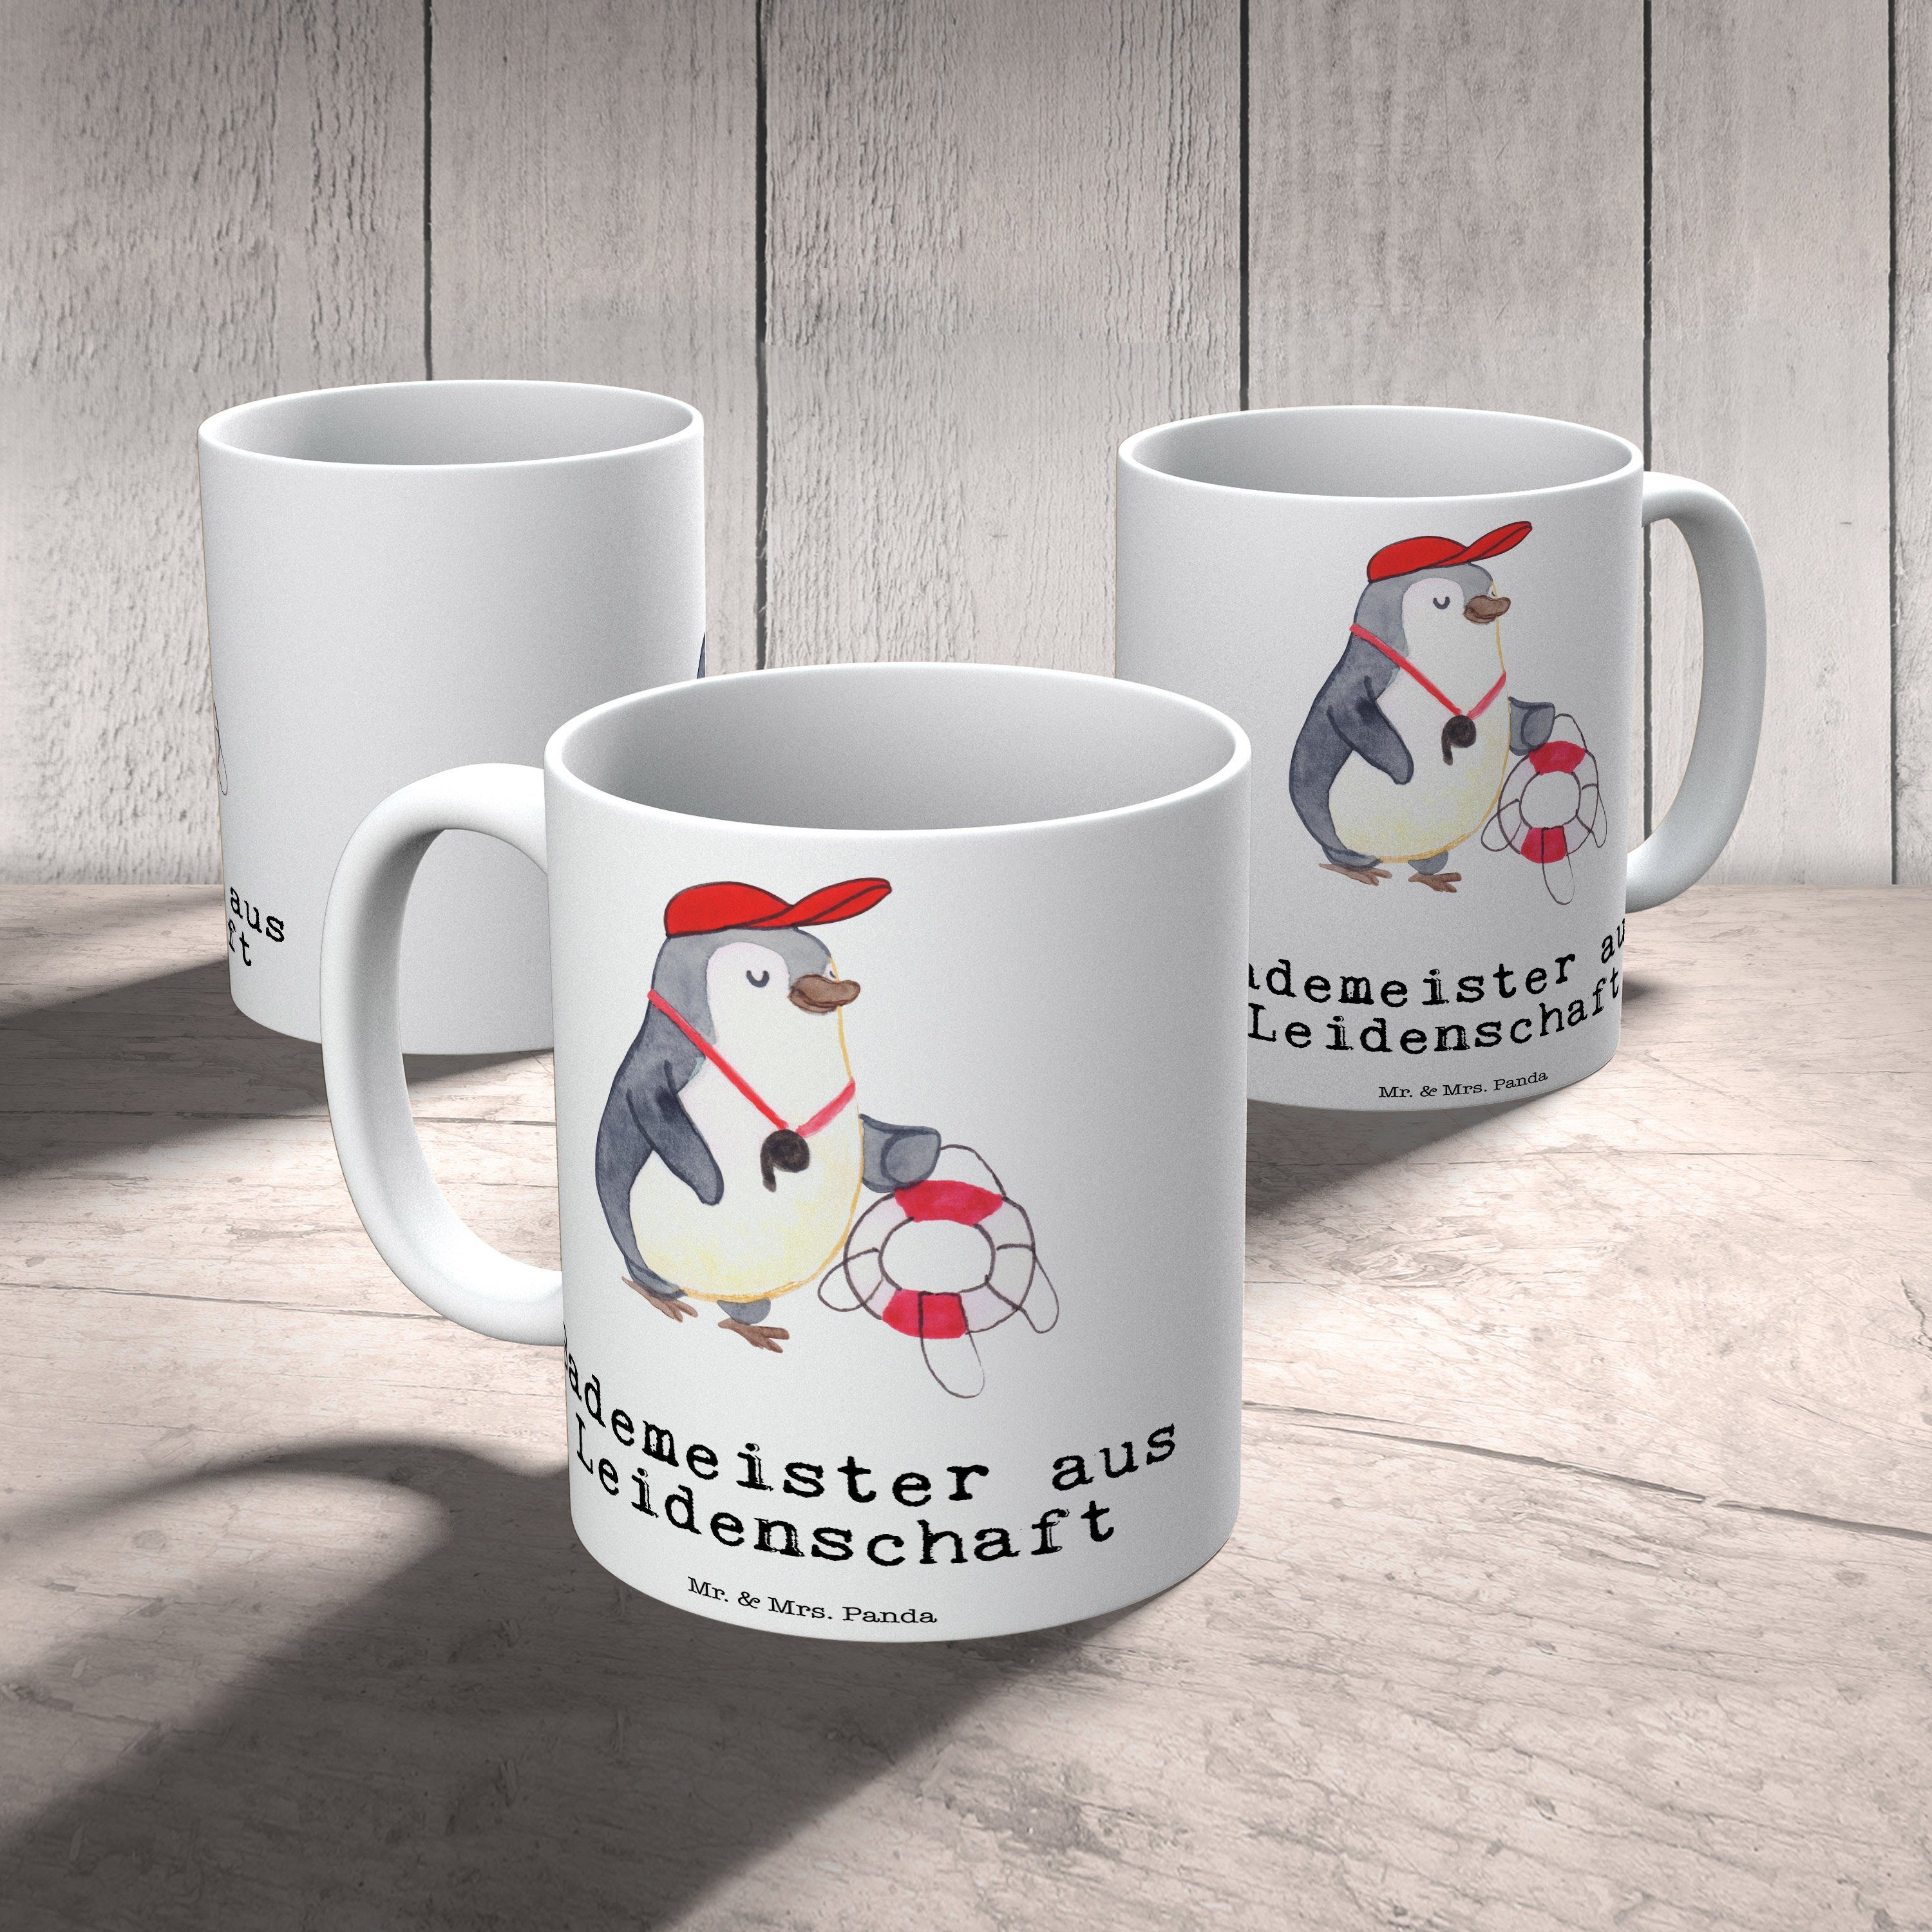 Mr. & Mrs. Panda Tasse Tasse, aus - Keramik Geschenk, Freibad, Büro - Weiß Bademeister Leidenschaft